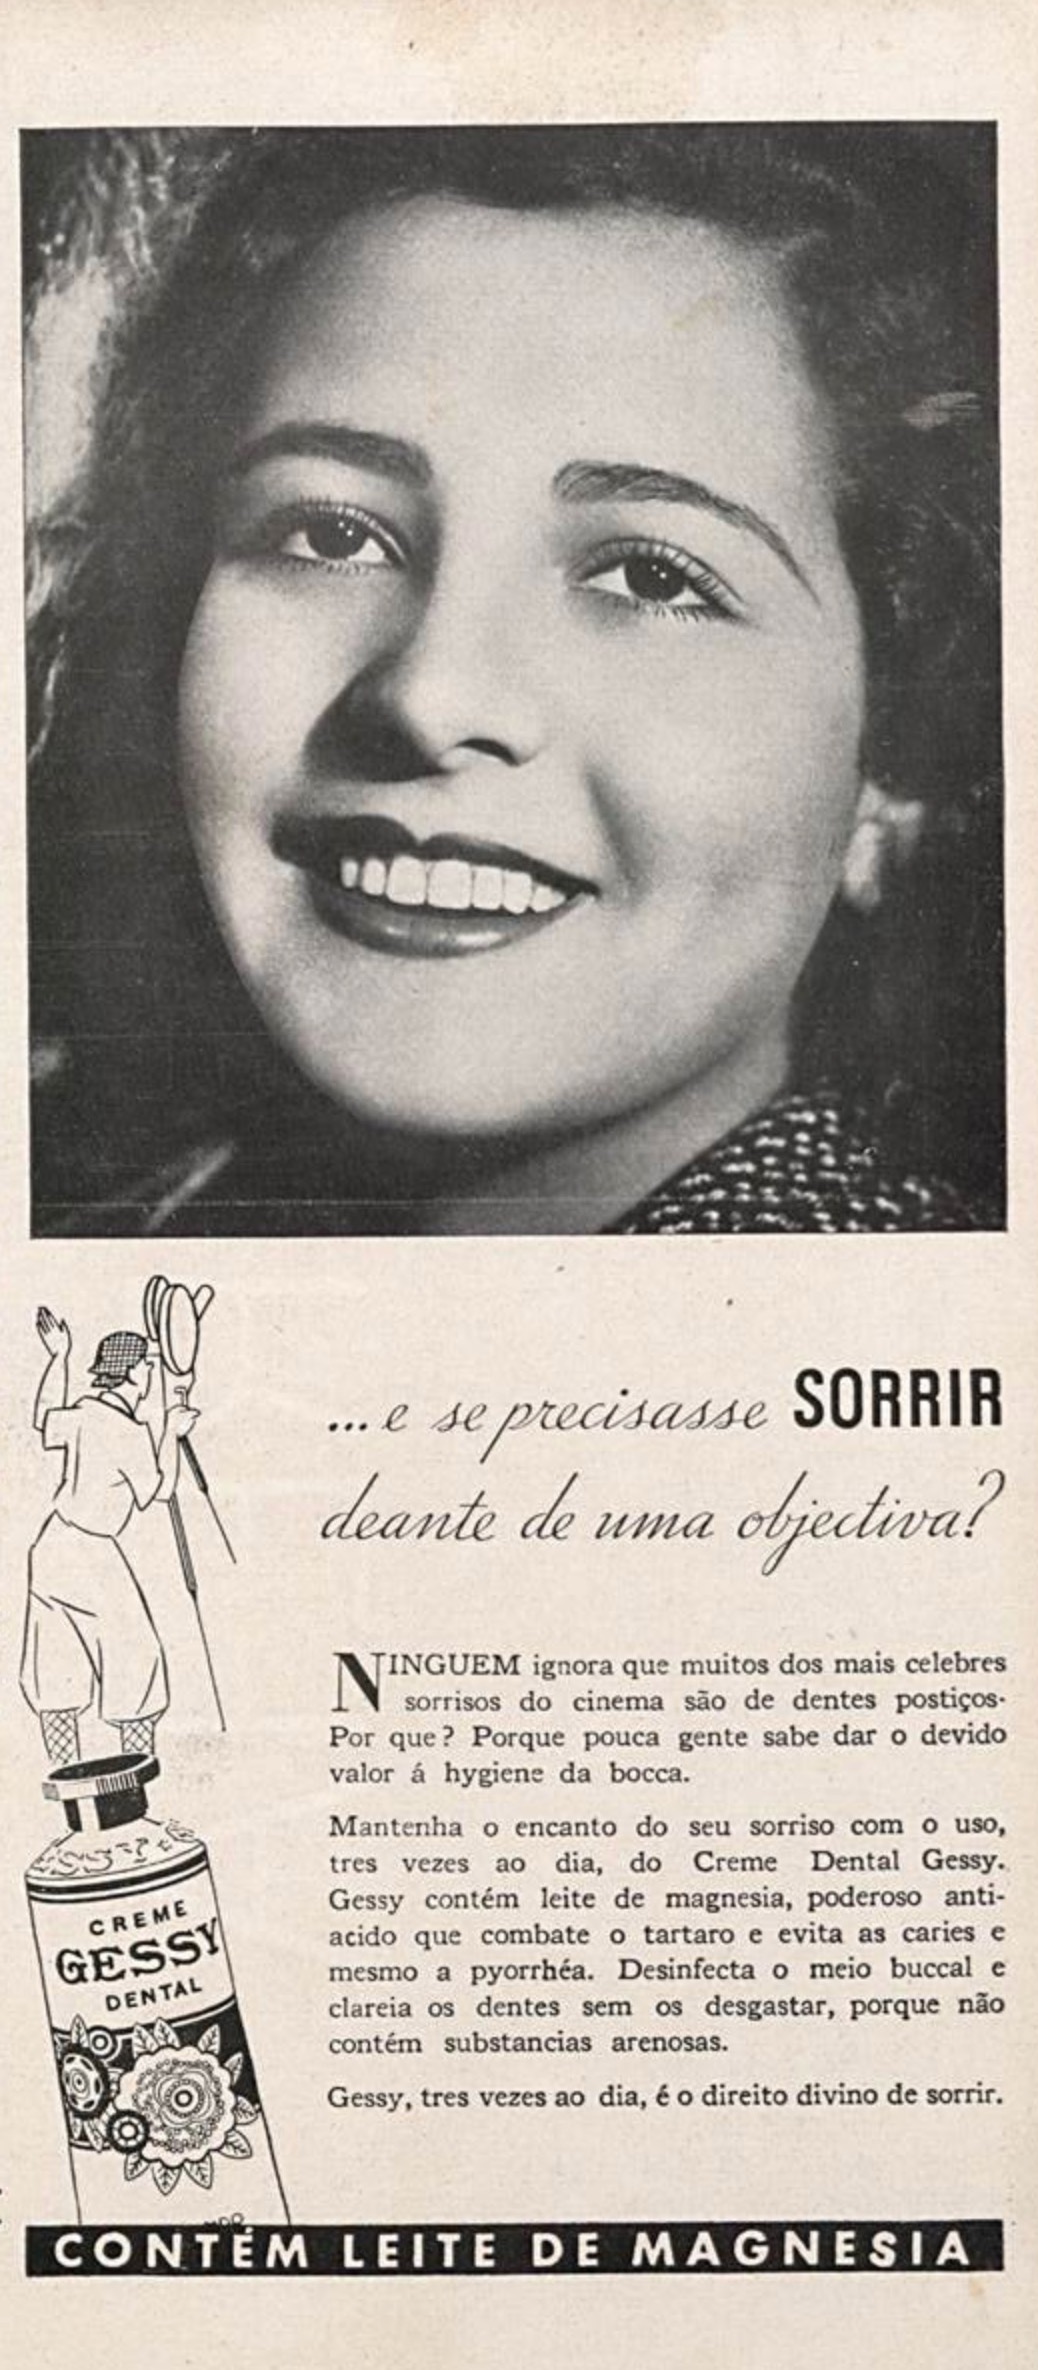 Campanha da Gessy apresentando os benefícios do seu creme dental em 1935